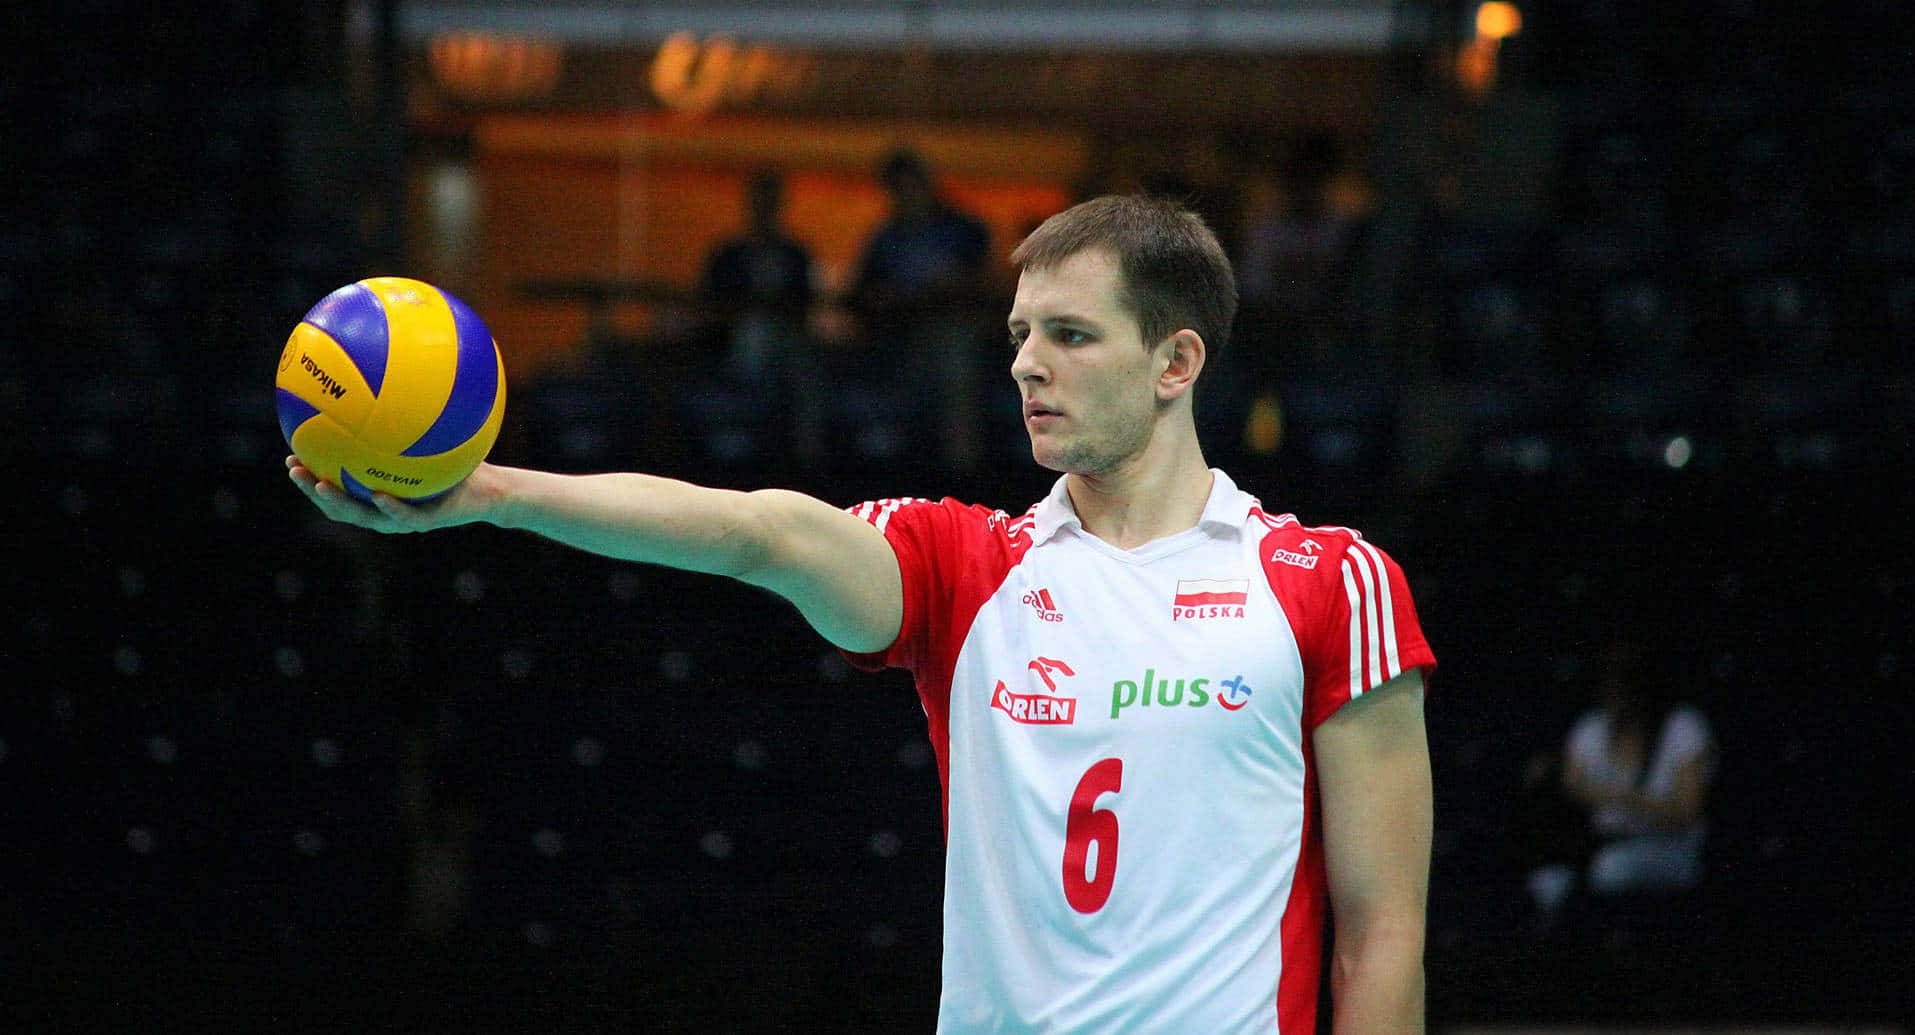 Best Volleyball BackgroundBartosz Kurek